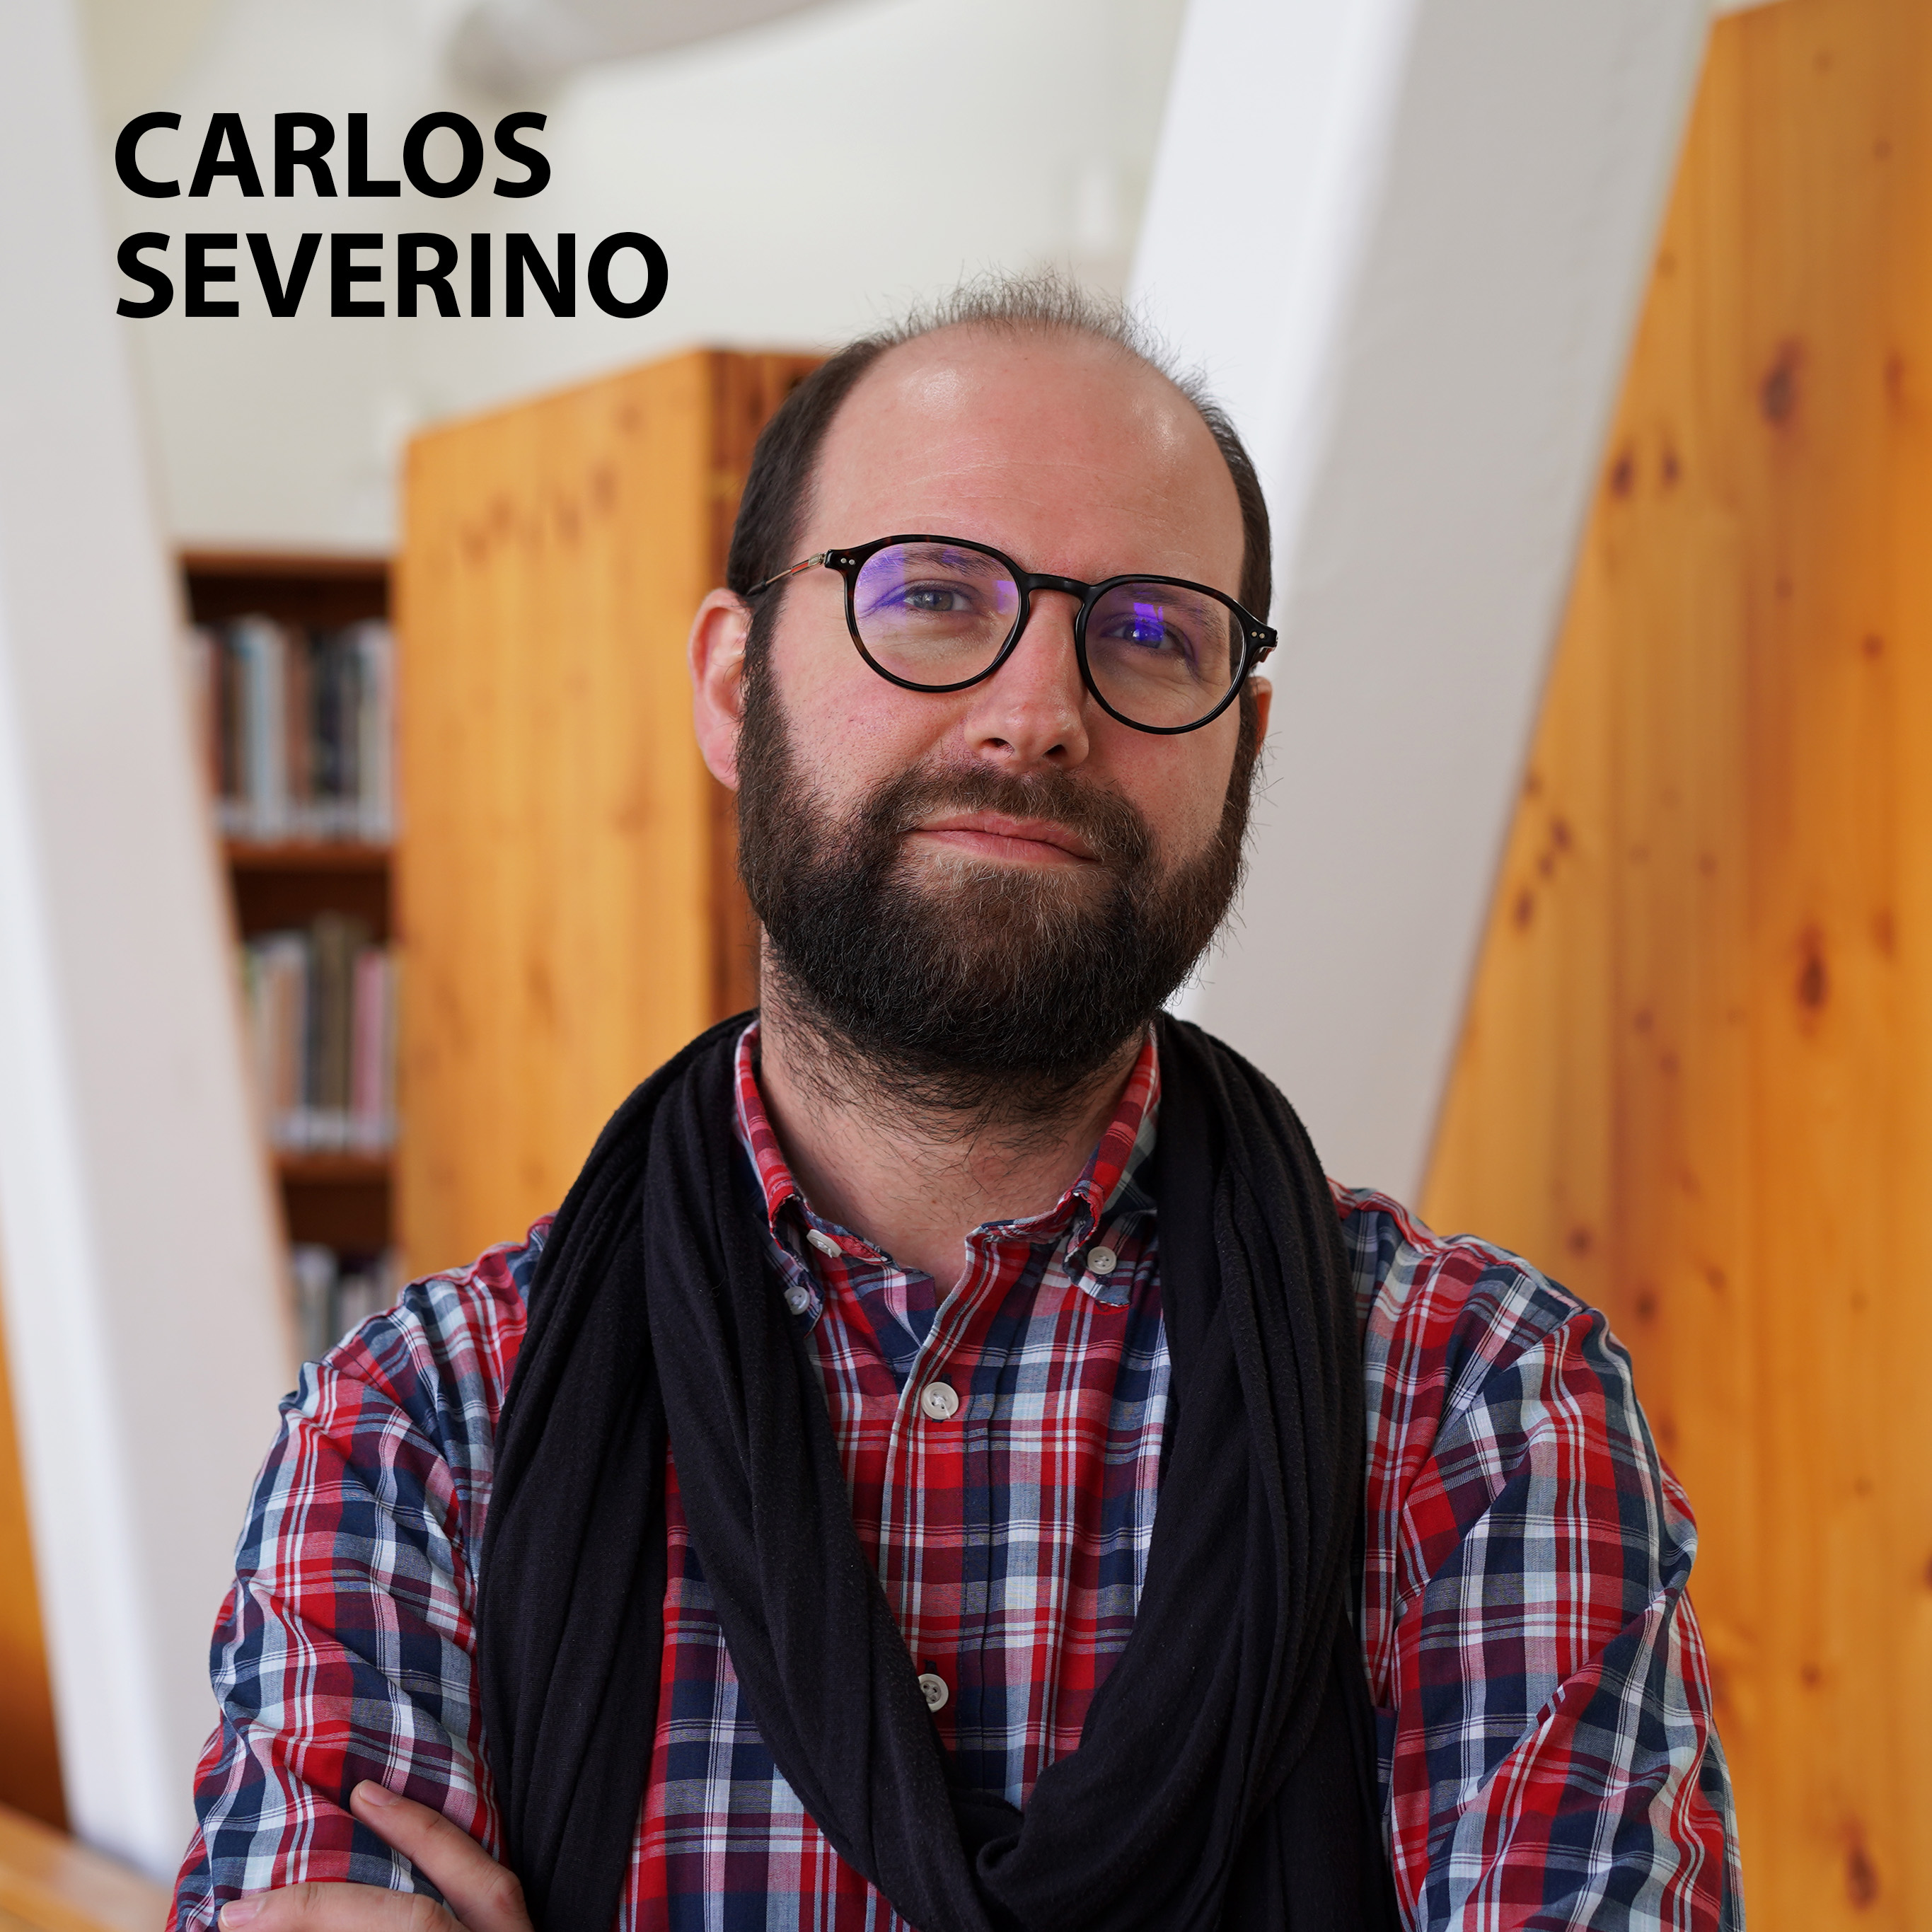 Livro de Cabeceira EP.31–Carlos Severino apresenta a obra “Metamorfoses” de Ovídio